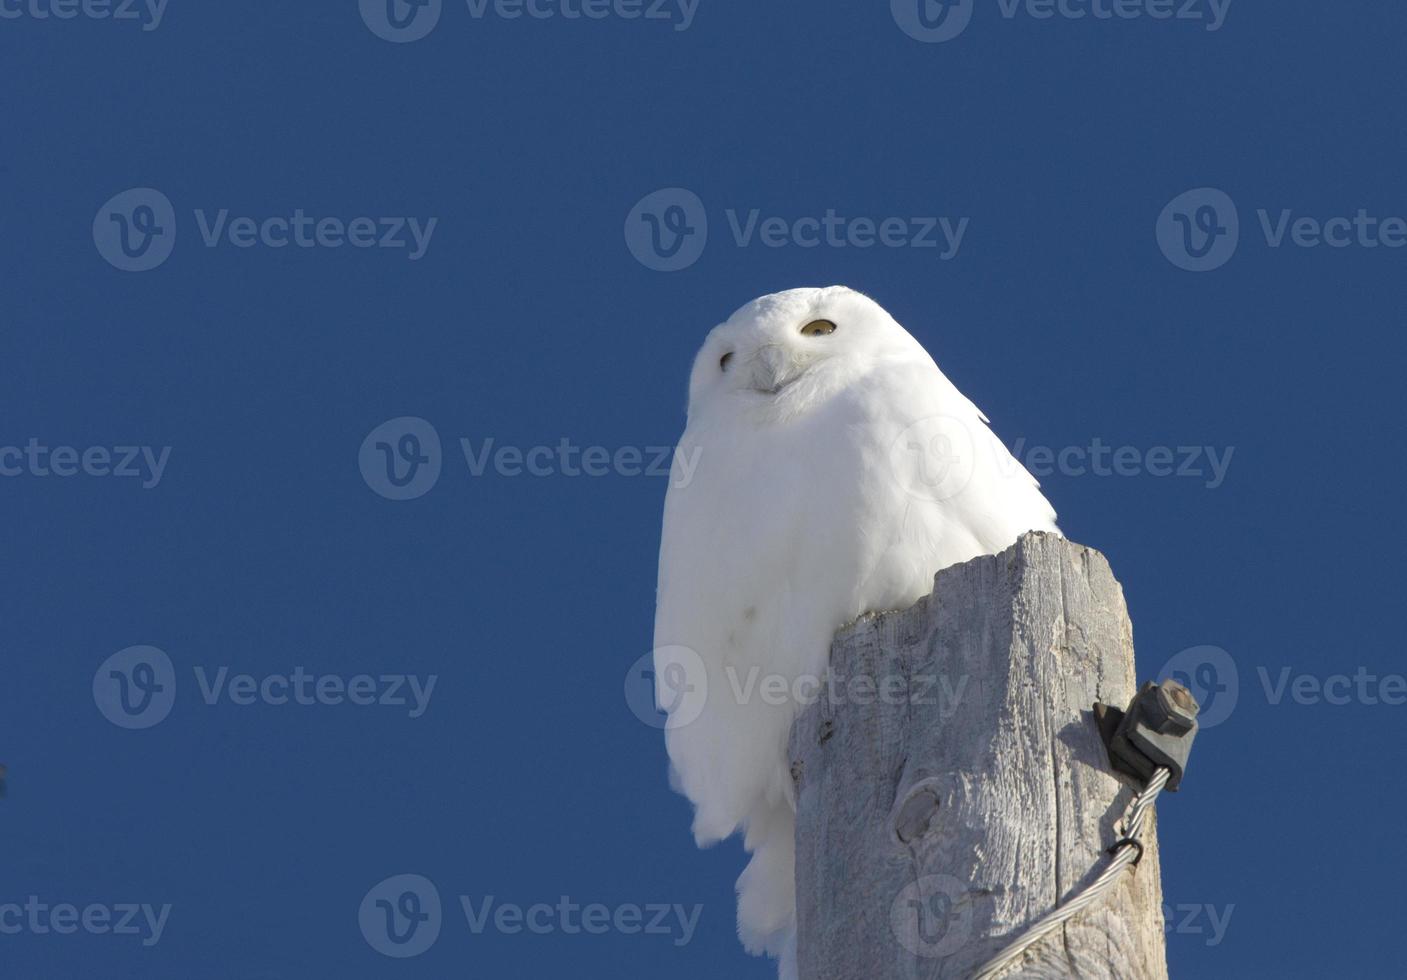 Snowy Owl on Pole photo